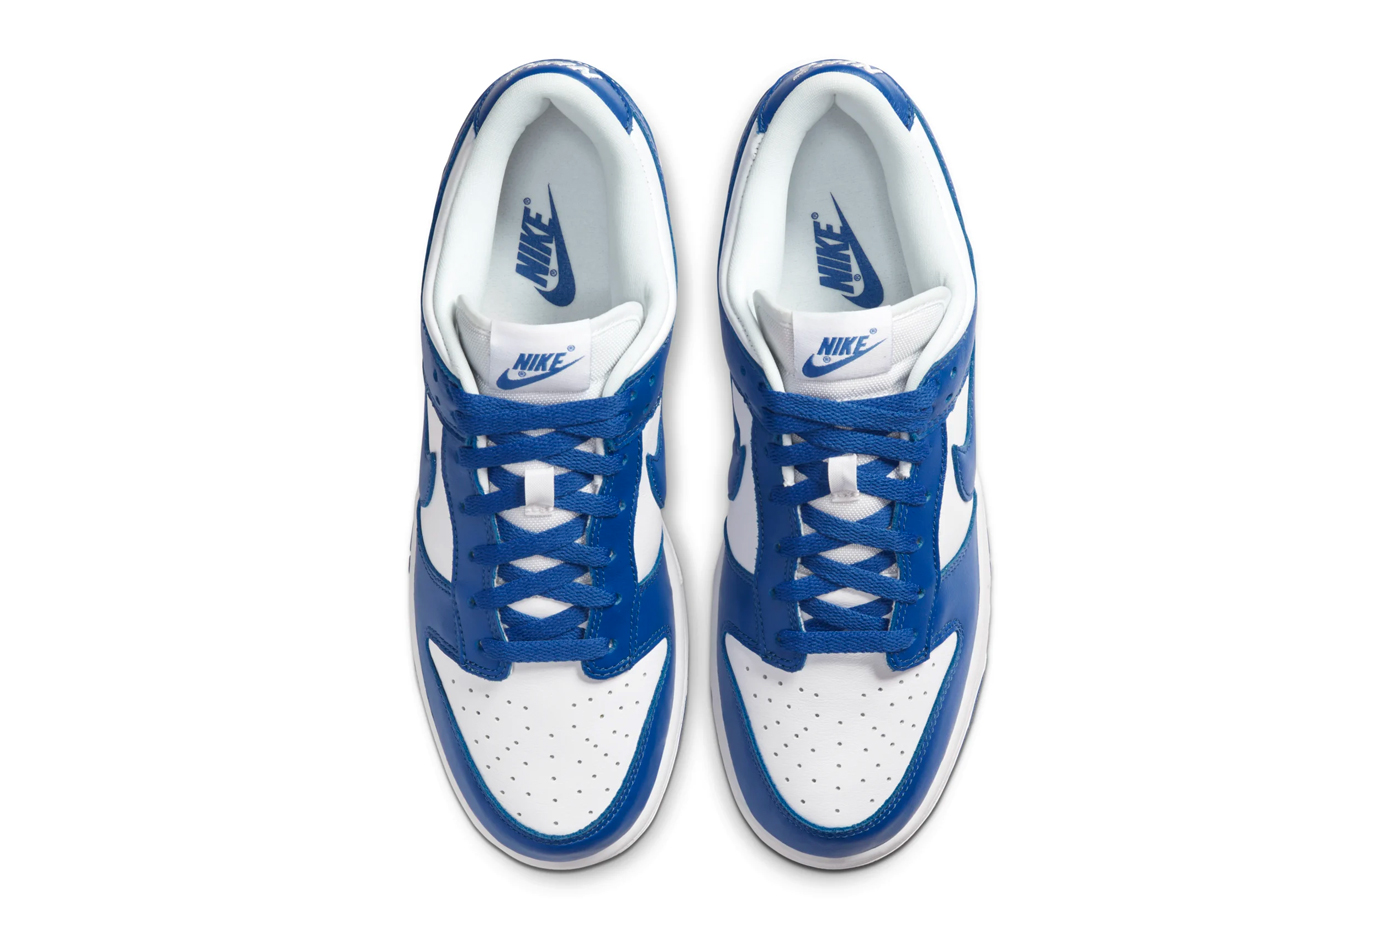 Nike Dunk Low "Varsity Blue" & Blaze" | Drops | Hypebeast